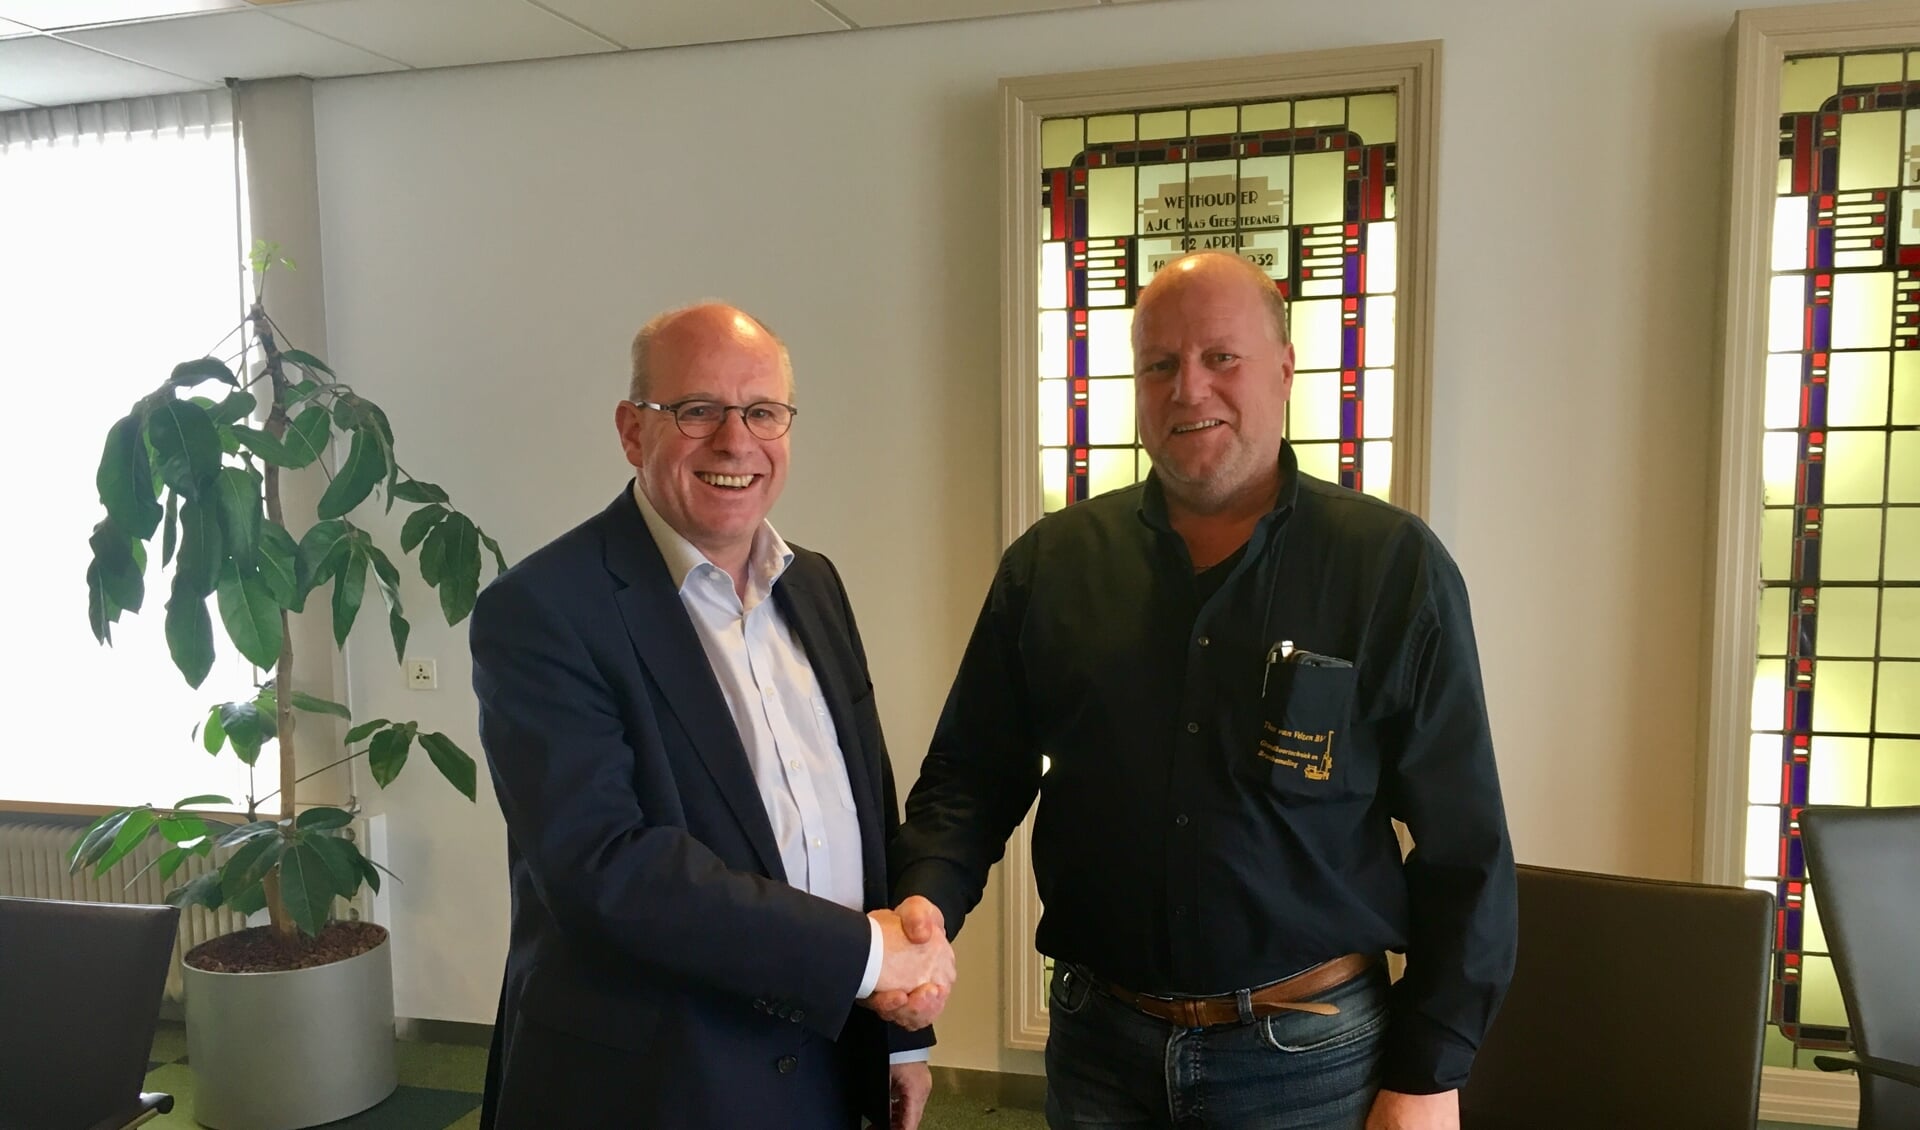 Fred Dellemijn (l), Wethouder gemeente Heiloo en Theo van Velzen, eigenaar Theo van Velzen storage tijdens ondertekening koopovereenkomst.

